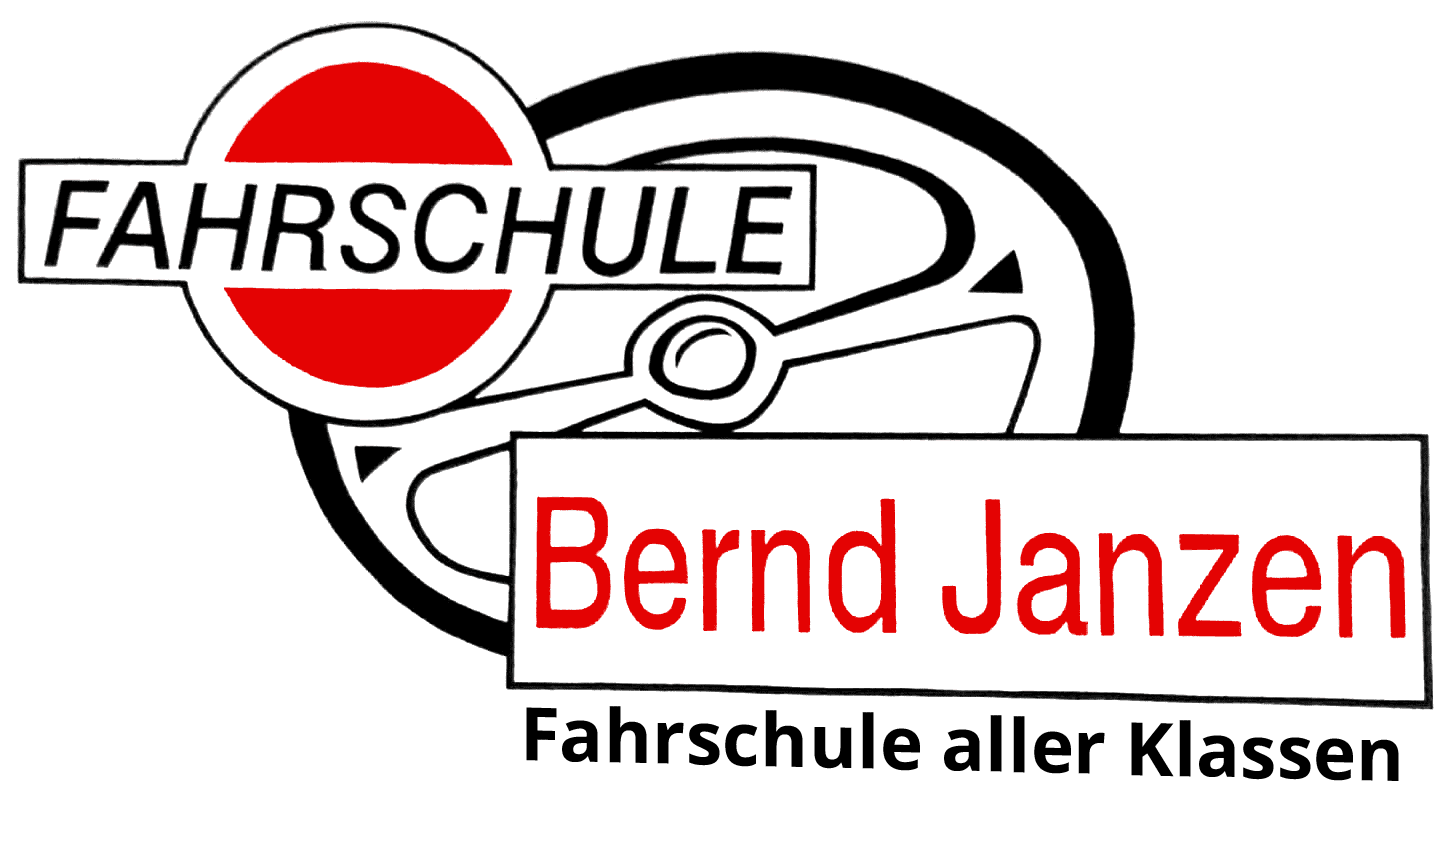 Fahrschule Bernd Janzen Logo